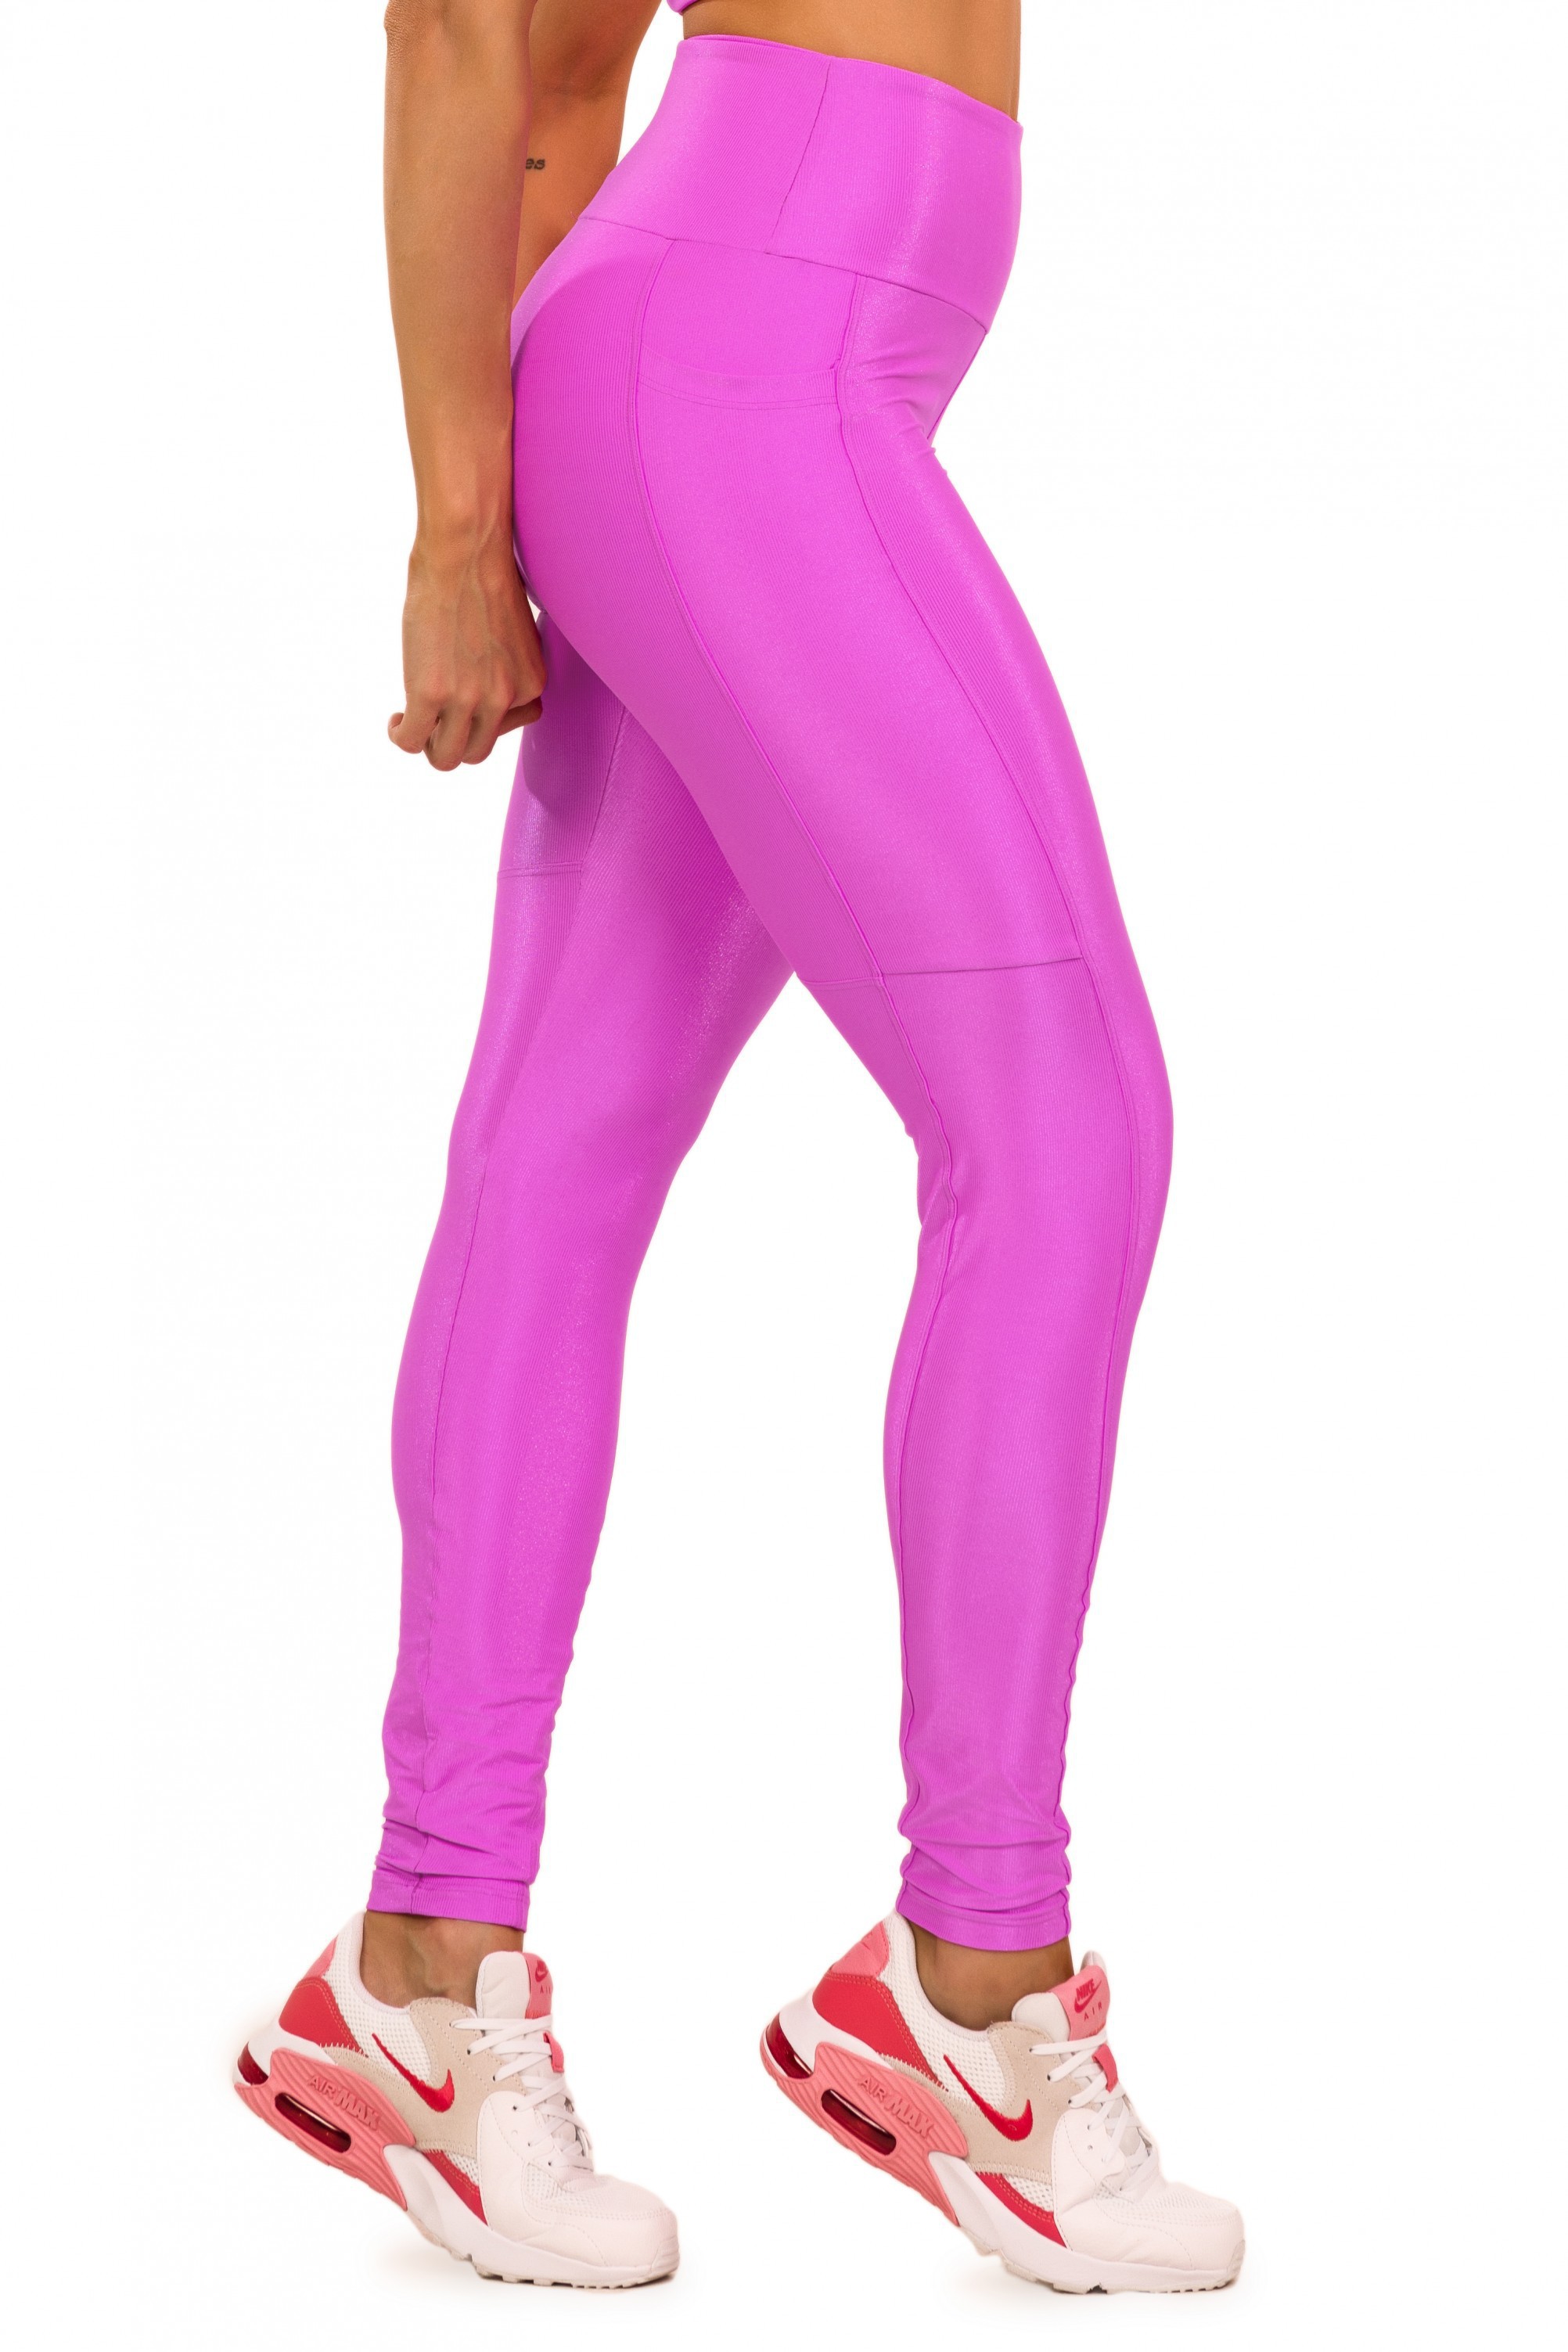 Legging Bright Microcanelada Pink com Bolso - Donna Carioca Moda